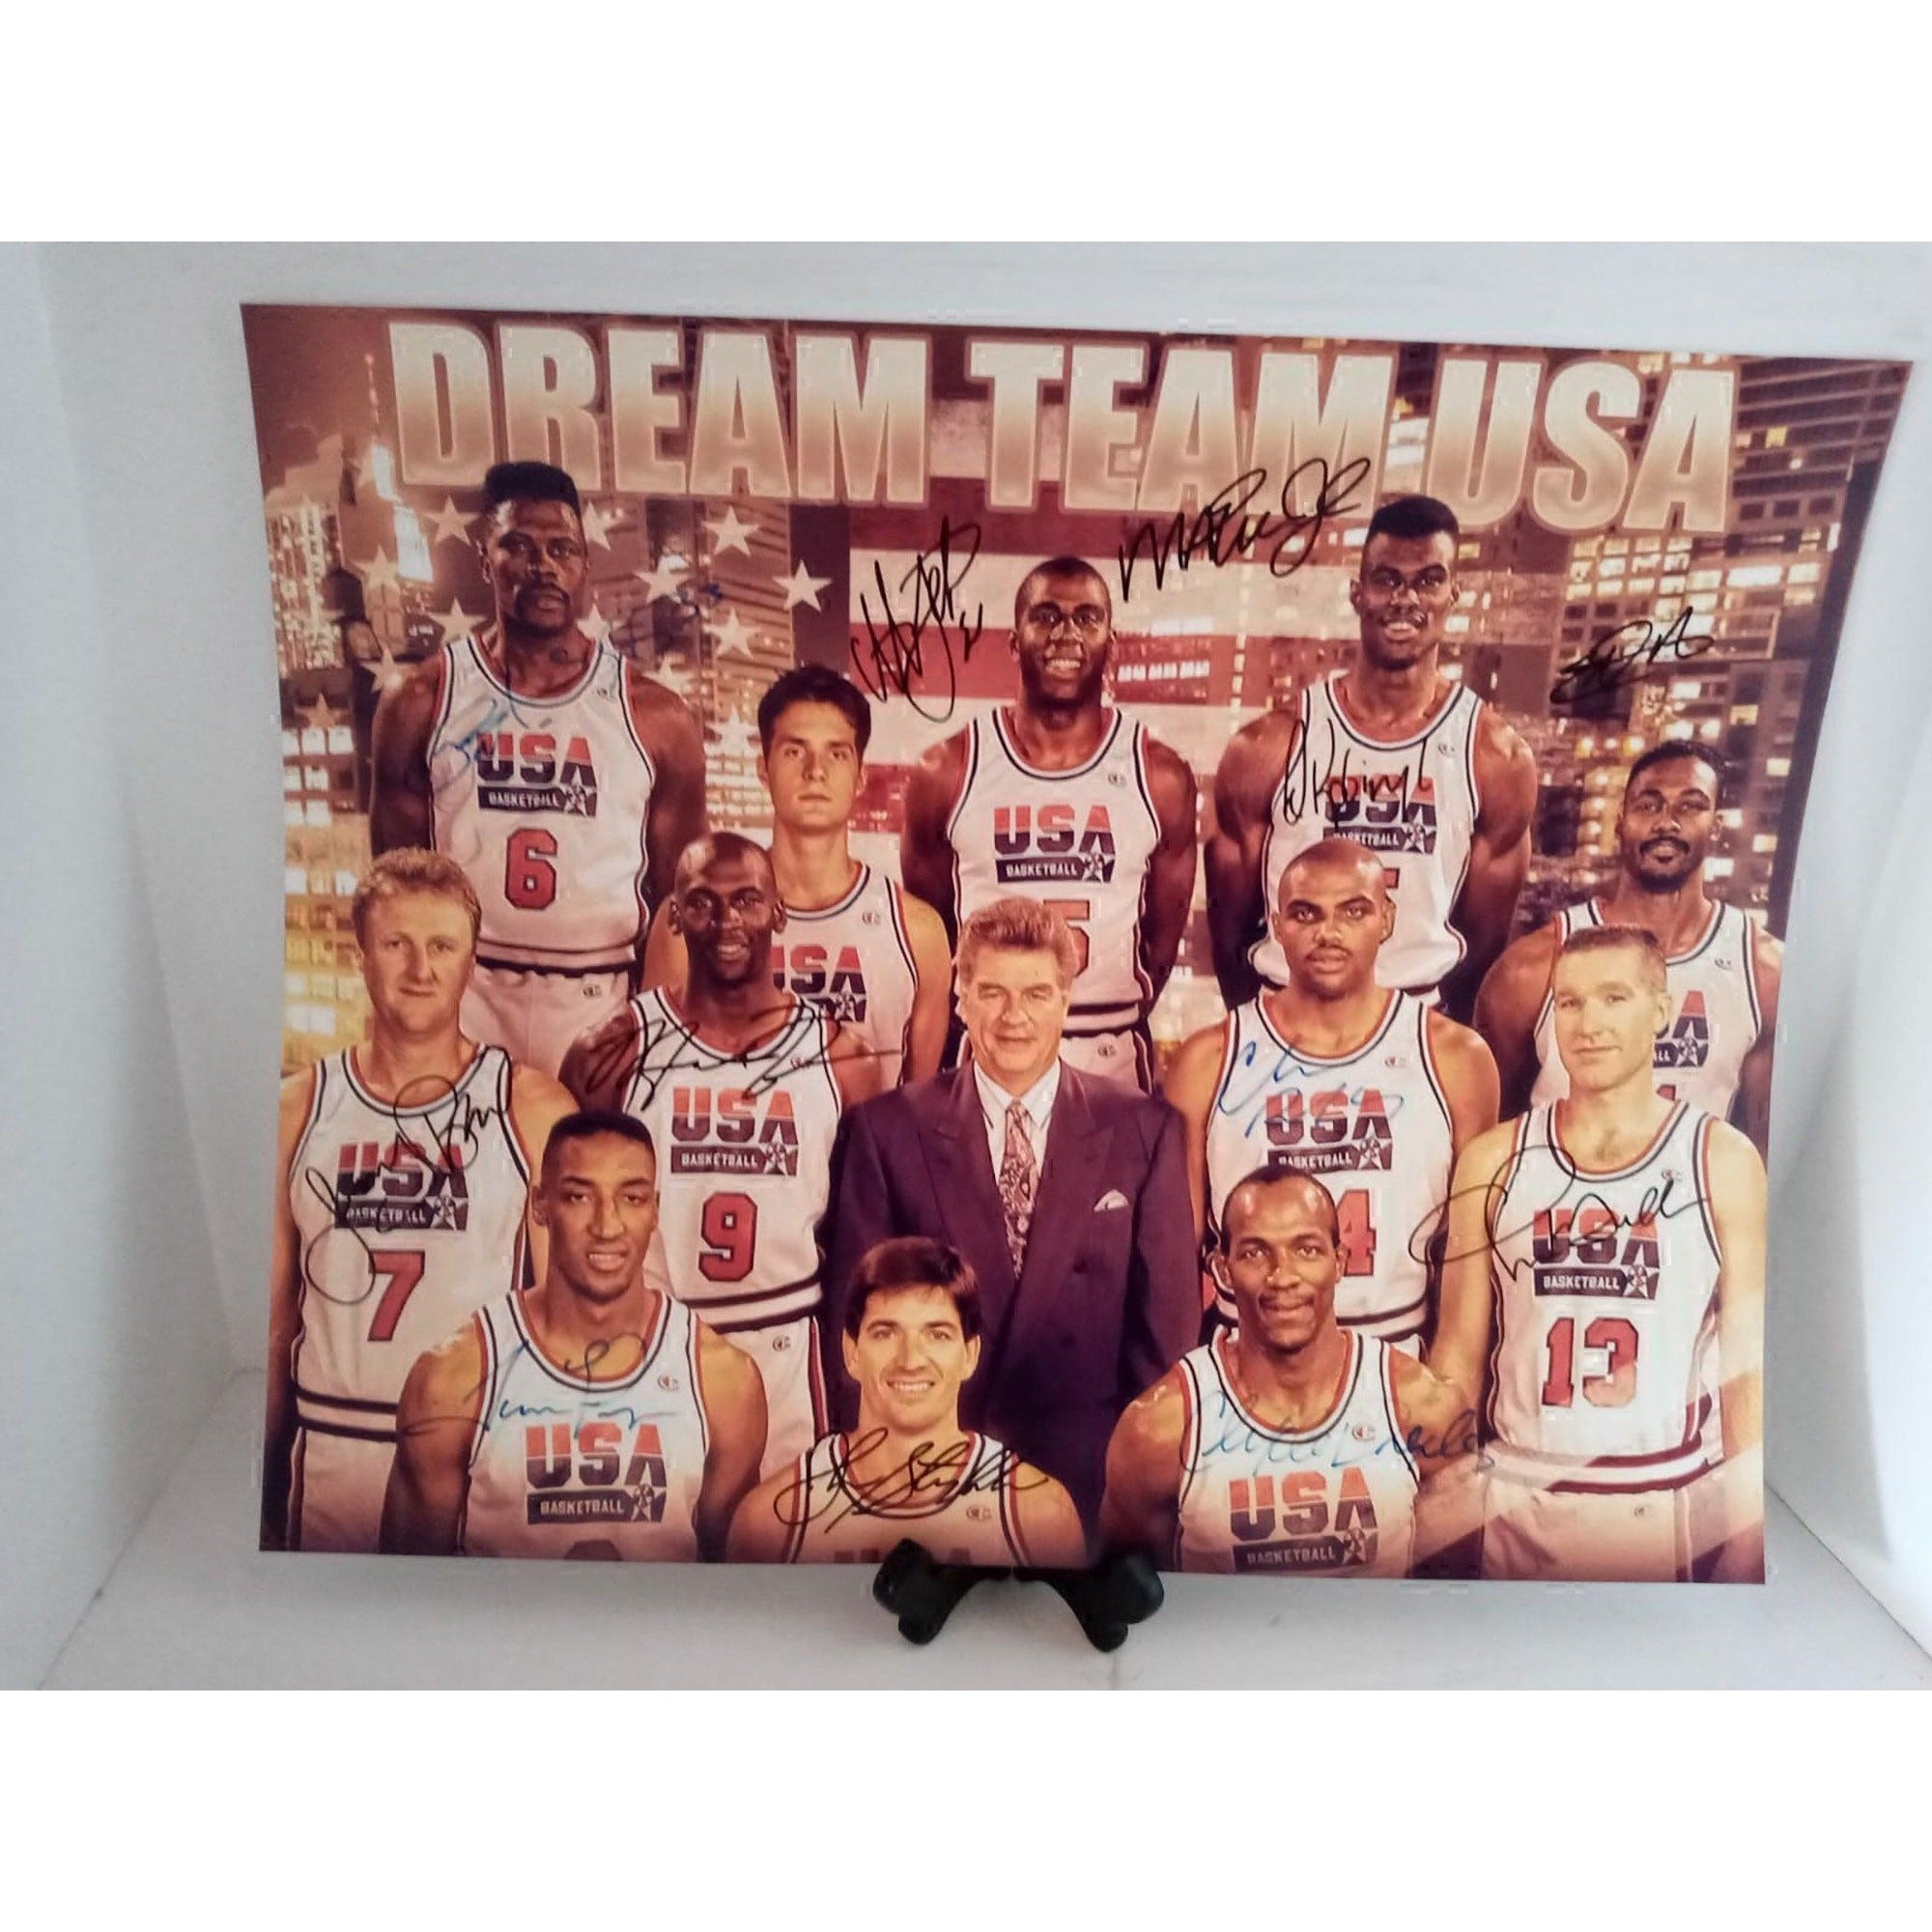 1992 Dream Team Signed Jersey - 13 Signatures (COA)